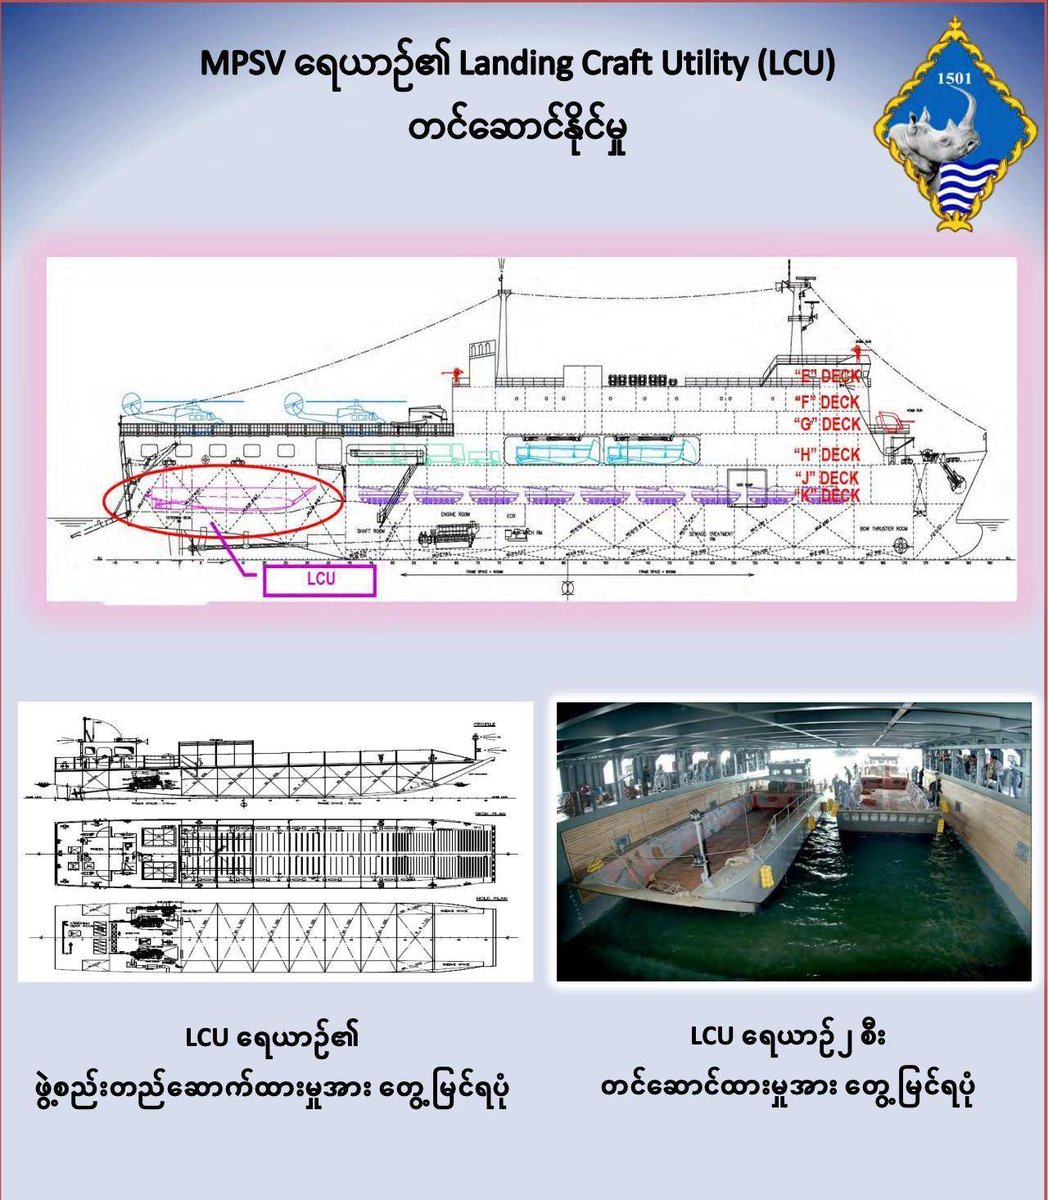 CDMမှာ ပါဝင်လာသူ မြန်မာ့ရေတပ်မှ အုပ်ခွဲတပ်ကြပ်ကြီး မြတ်မင်းသူက တောင်ကိုရီးယားရဲတပ်ဖွဲ့ဆီ တရားဝင်တင်သွင်းခဲ့တဲ့ သက်သေအထောက်အထားတွေမှာ သင်္ဘောရဲ့ မူလဒီဇိုင်းပုံတွေအရ သင်္ဘောကိုစစ်ဘက်အသုံးပြုမယ့် ကုန်းရေနှစ်သွယ်သုံး တိုက်ခိုက်ရေး စစ်သင်္ဘောအဖြစ် တည်ဆောက်ခဲ့တာဖြစ်ကြောင်းသက်သေပြနေ။ ၄/